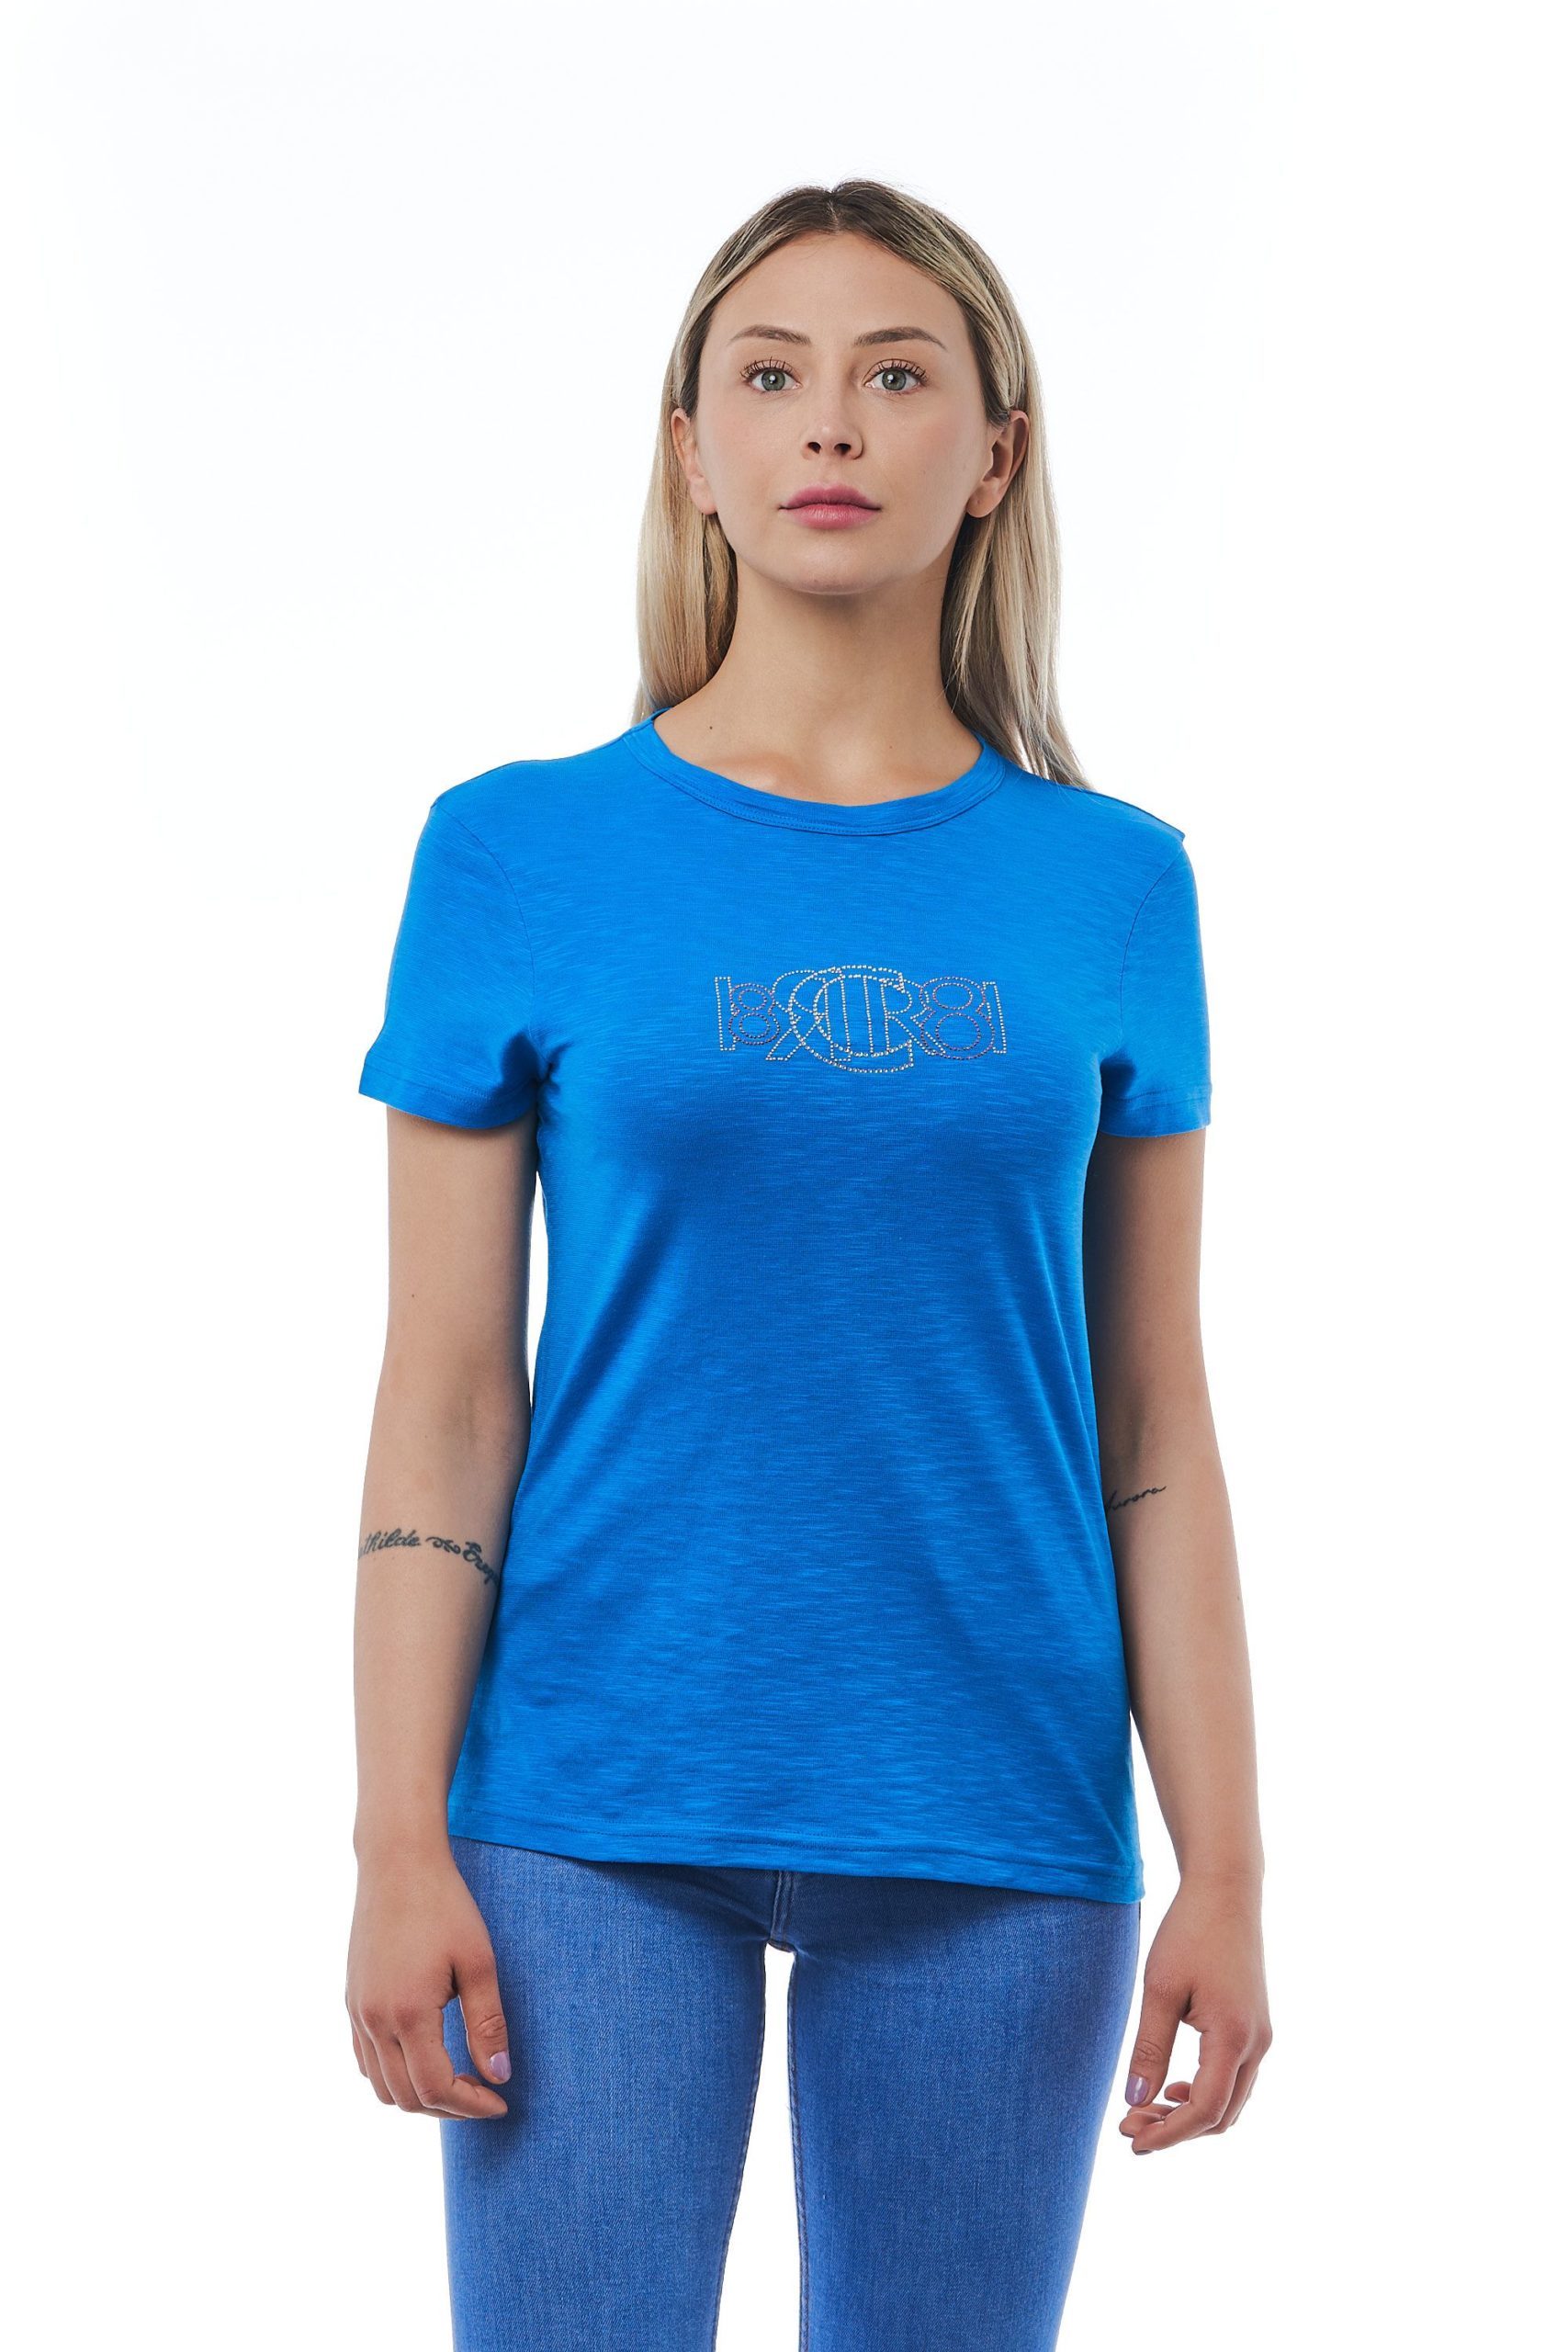 Cerruti 1881 Women's Blutte T-Shirt Light Blue CE1410181 - M